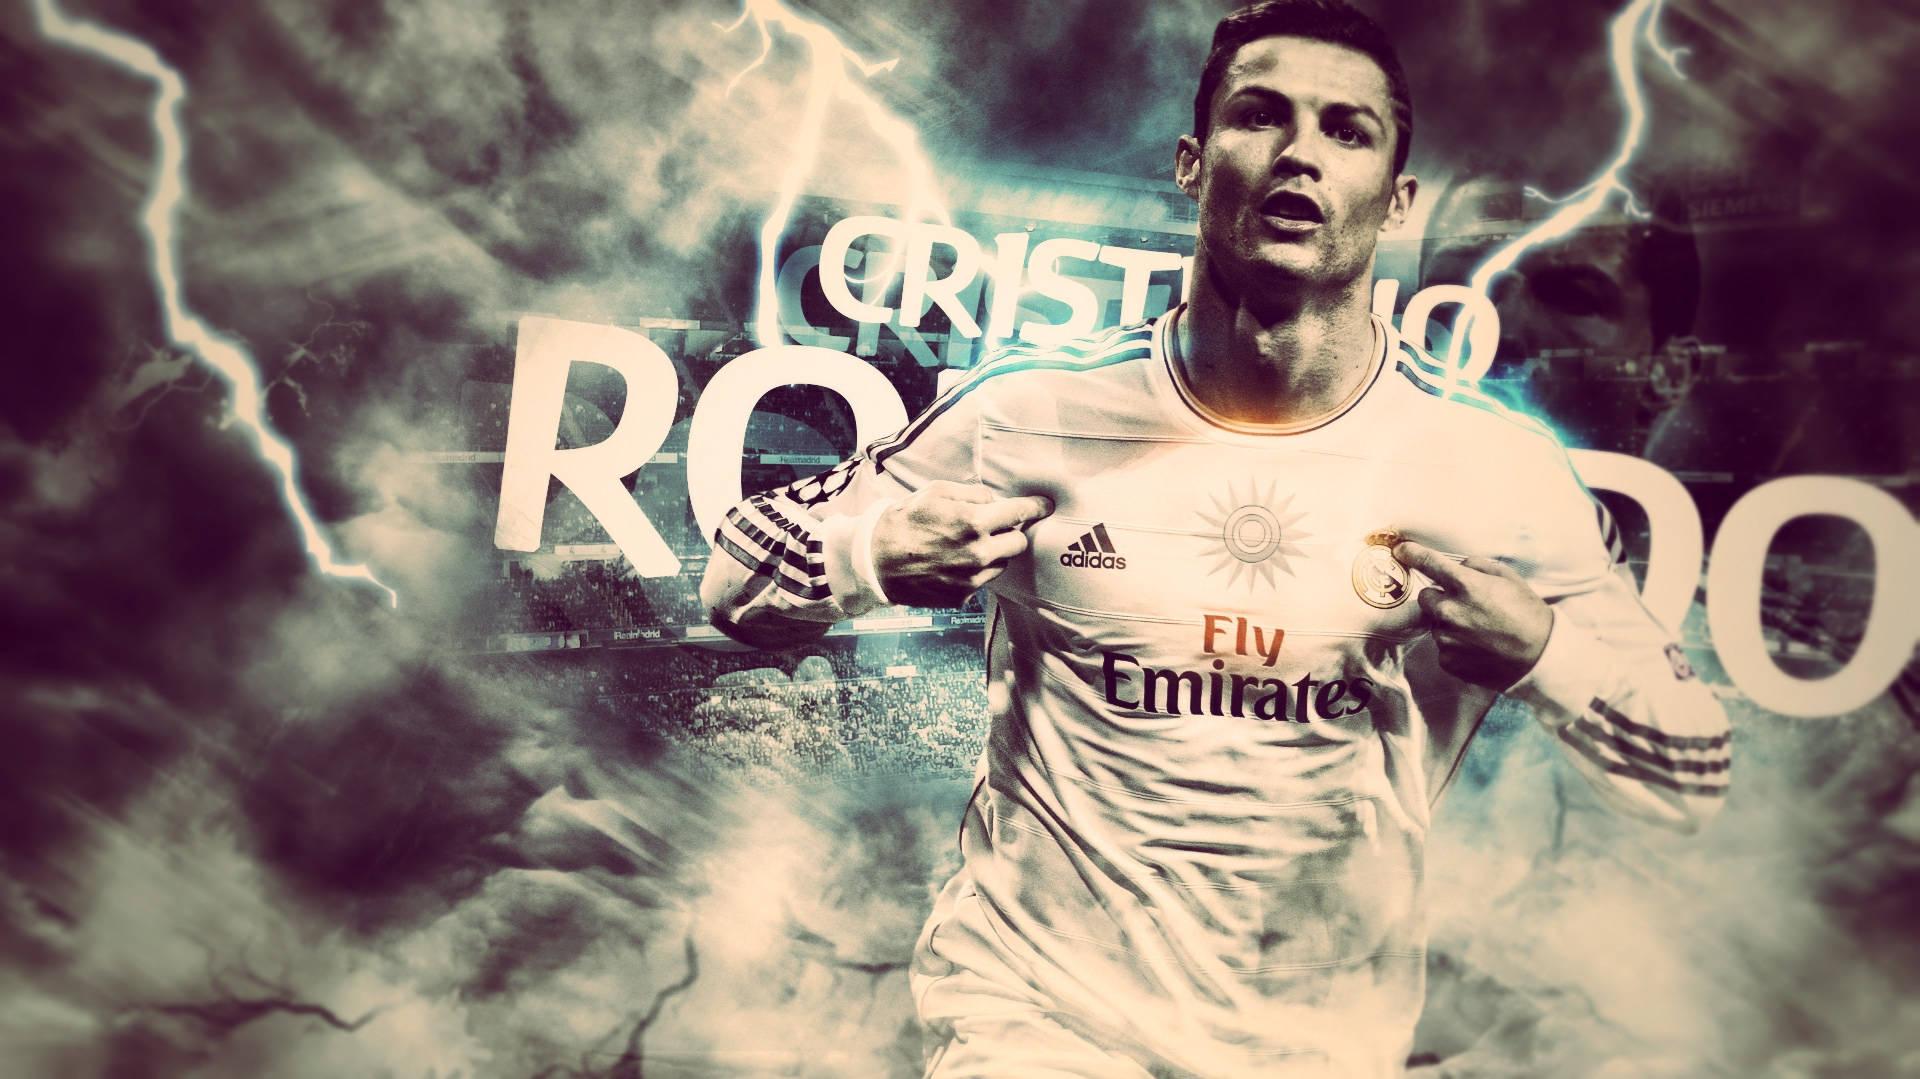 Download Lightning Strikes For Ronaldo Wallpaper